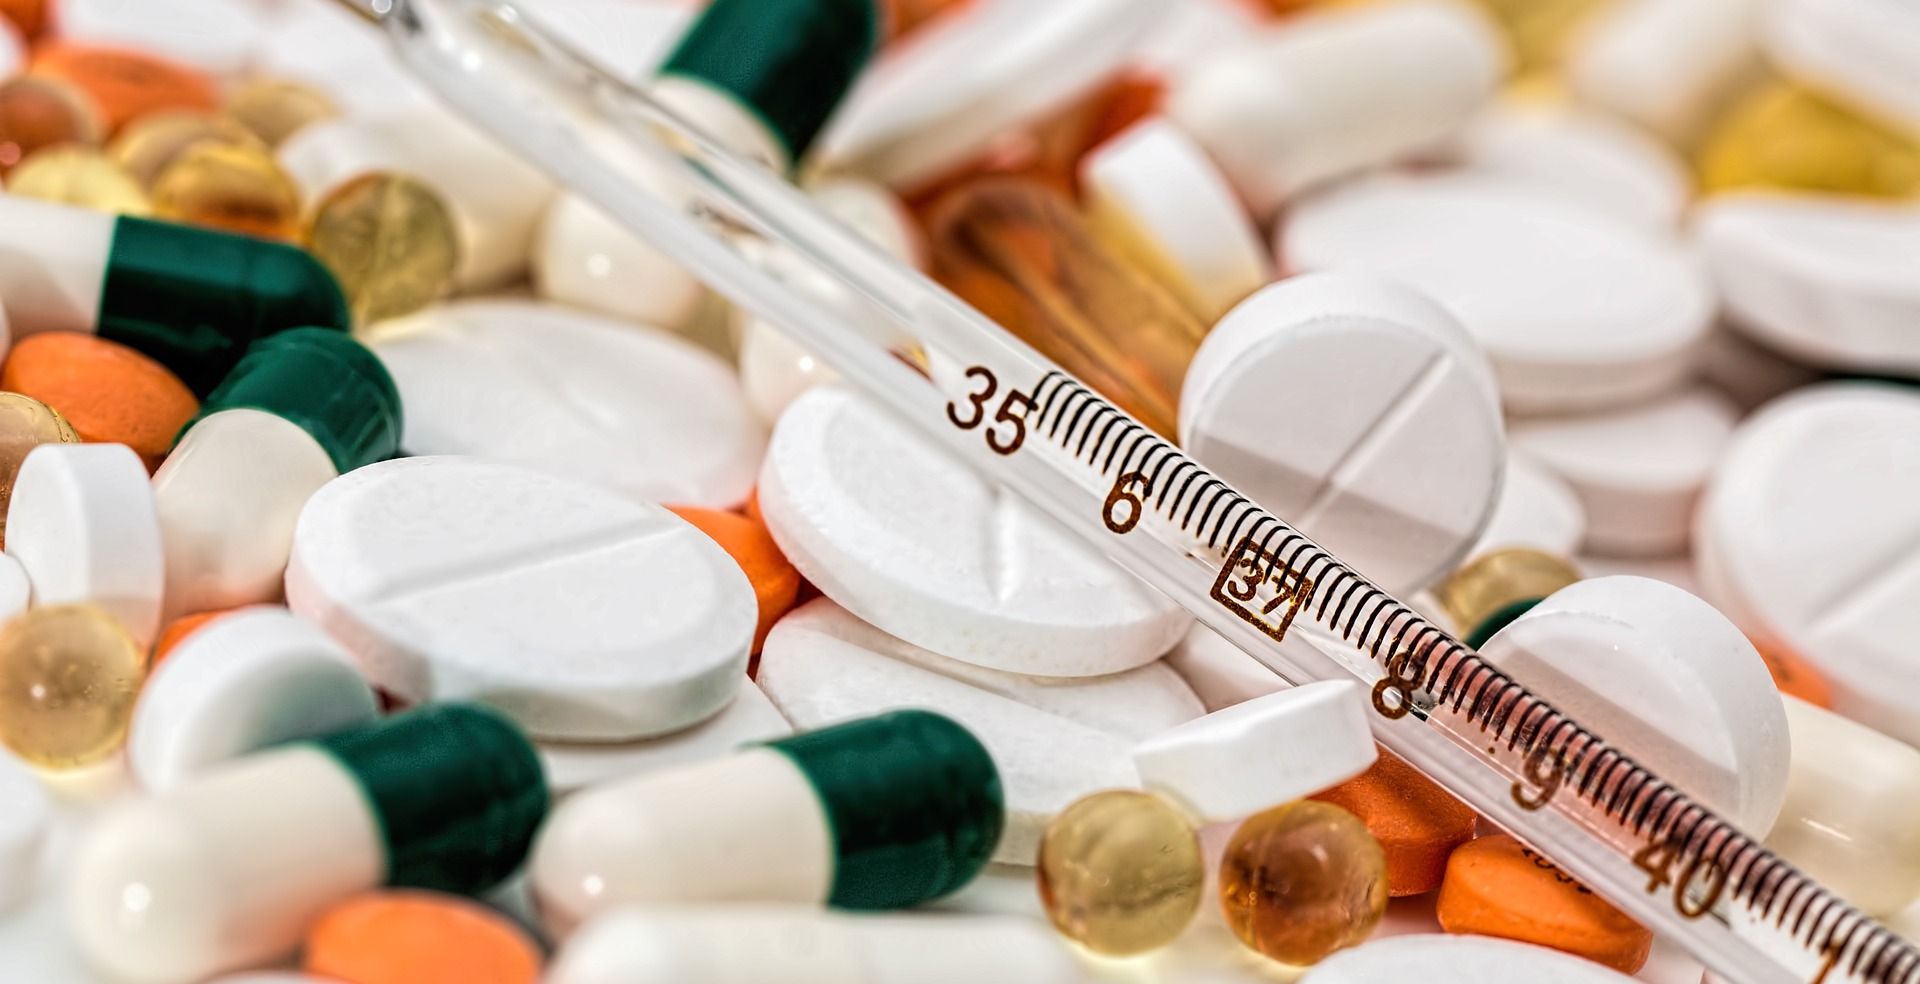 Potrošnja lijekova i dalje u porastu, građani najviše kupuju lijekove protiv bolova i temperature